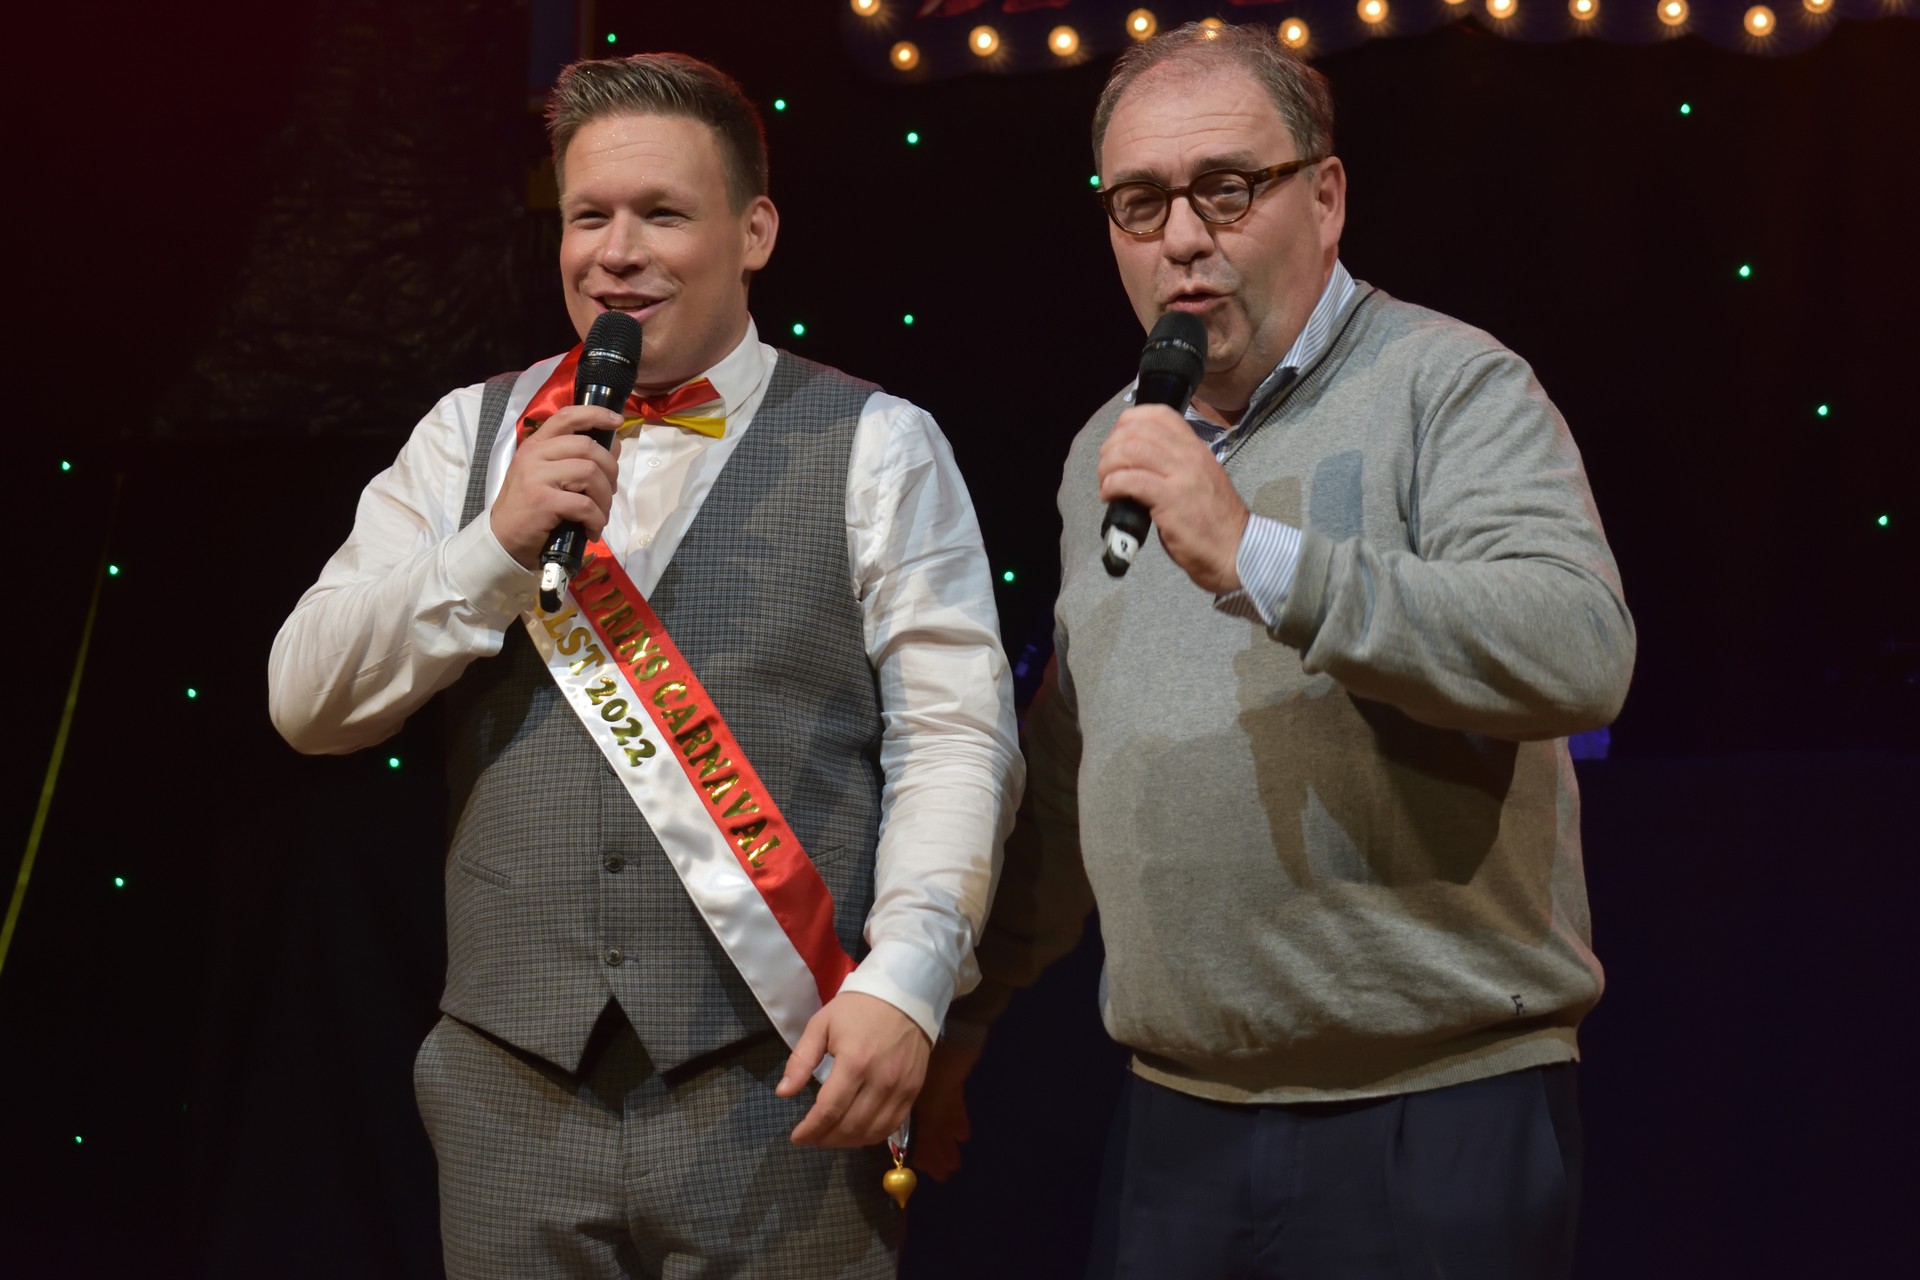 
Aalst Carnaval - Verkiezing Prins Carnaval steekt in een nieuw jasje!
